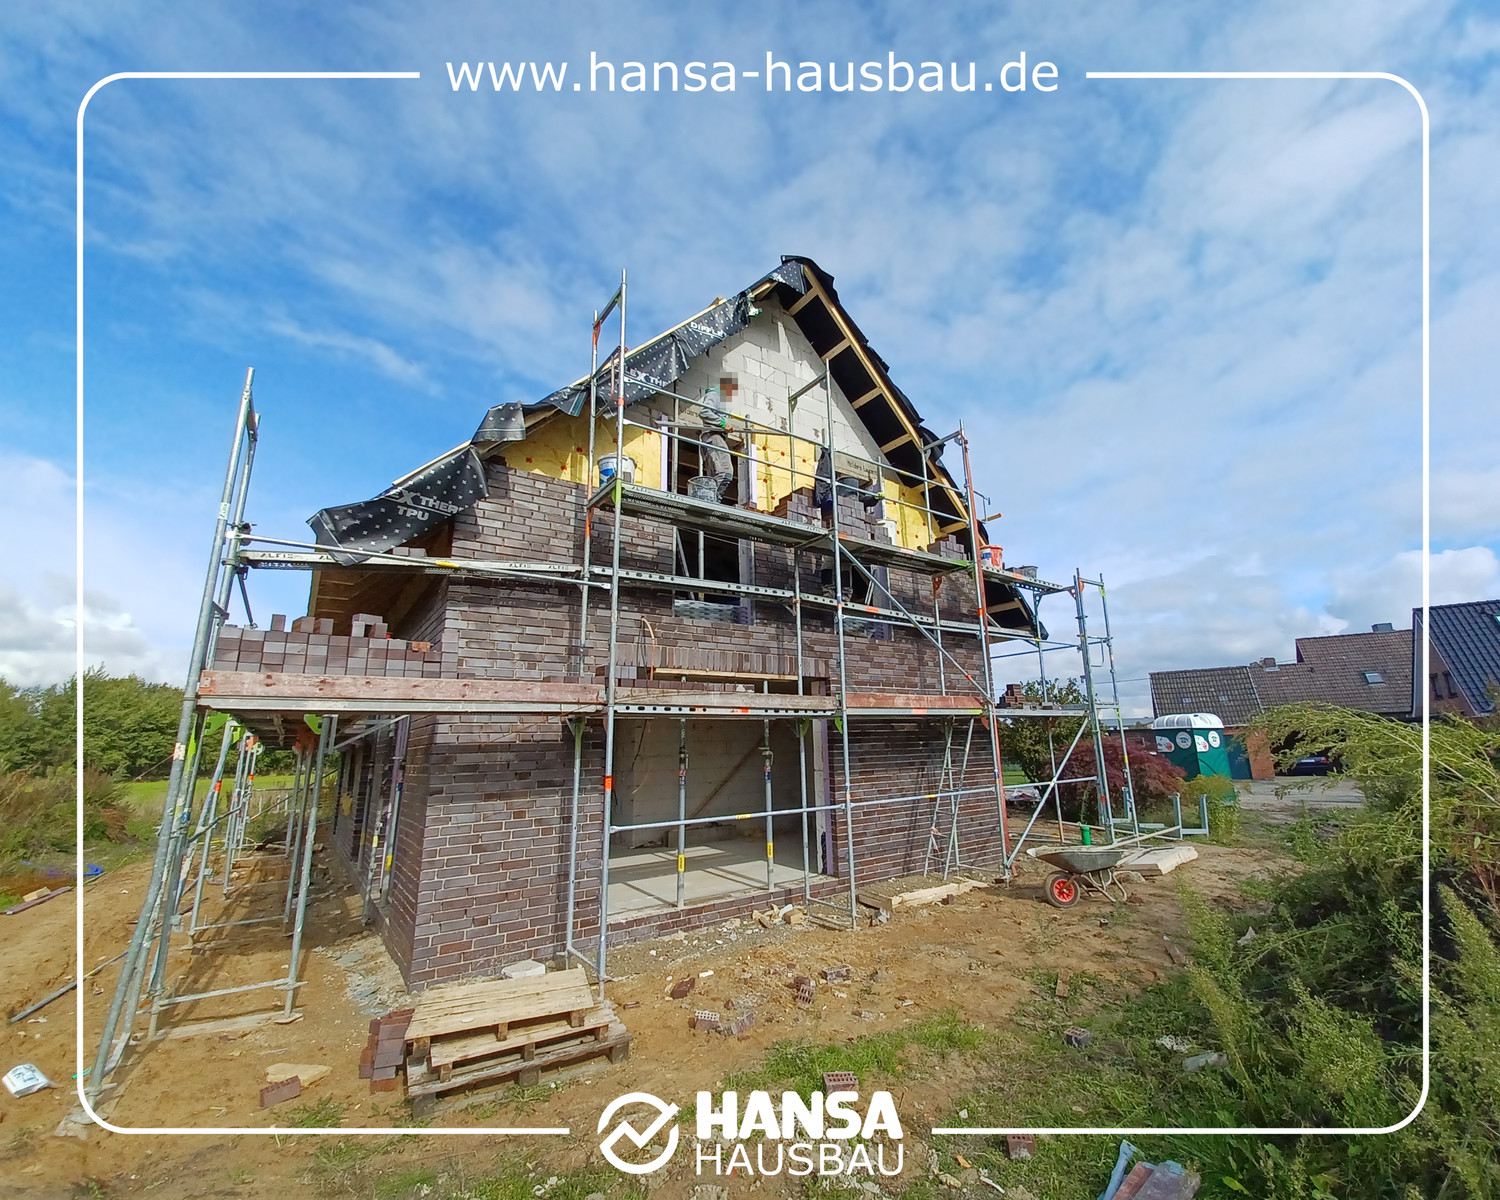 Hansa Hausbau Bauplanung Architektenhaus Neubau 